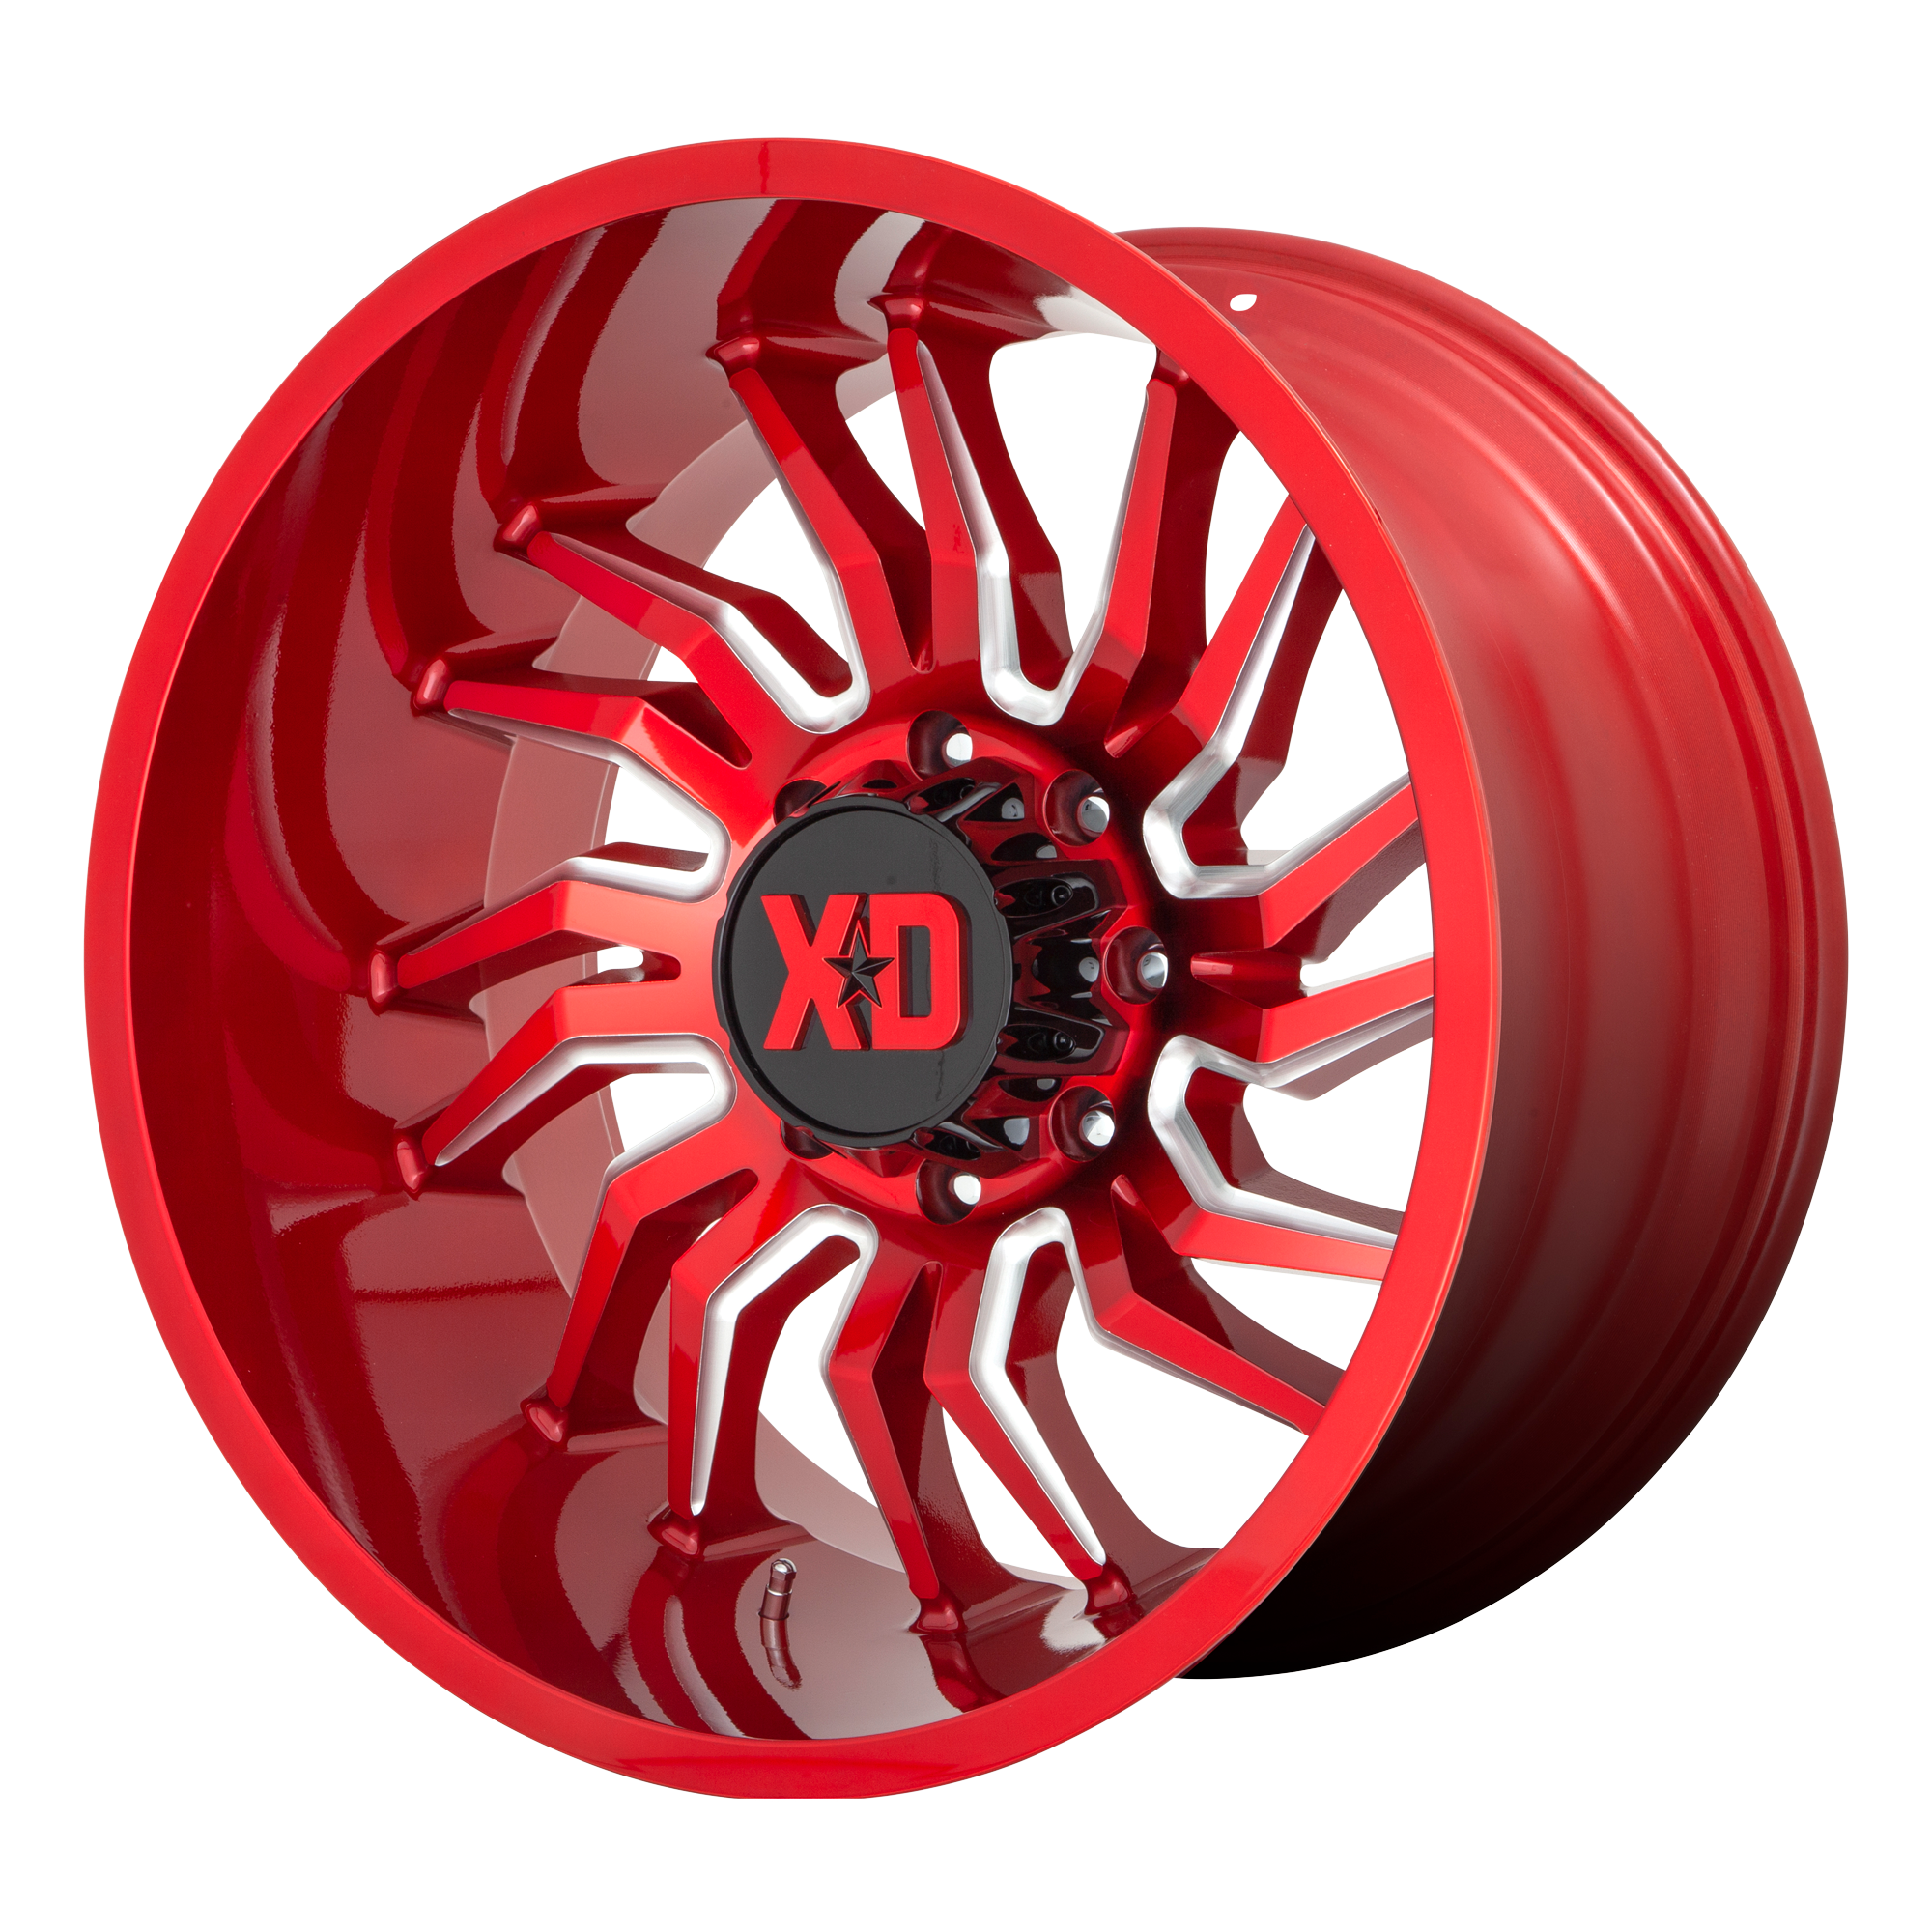 XD 22"x10" Non-Chrome Candy Red Milled Custom Wheel ARSWCWXD85822068918N